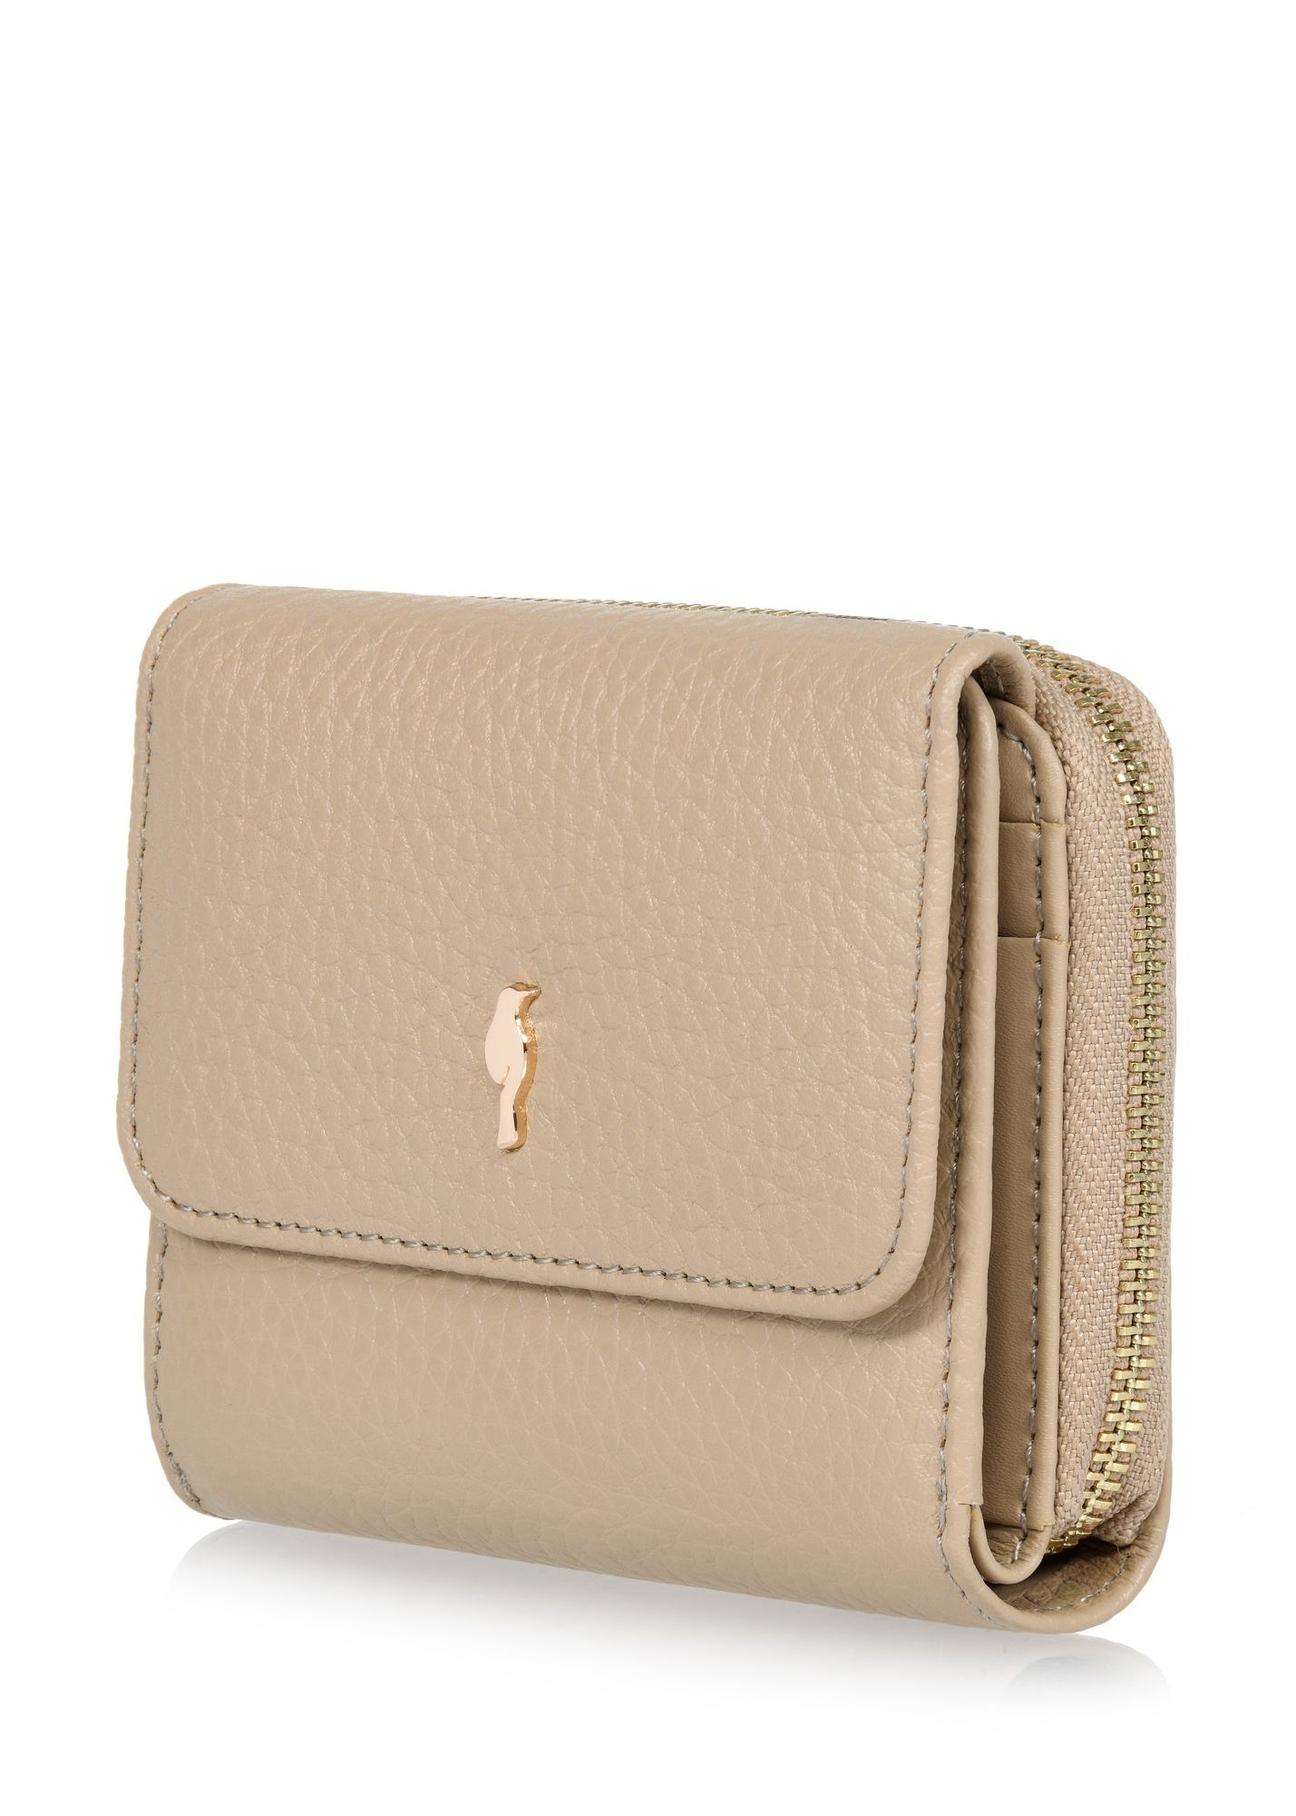 Beżowy skórzany portfel damski z ochroną RFID PORES-0817RFID-82(W24)